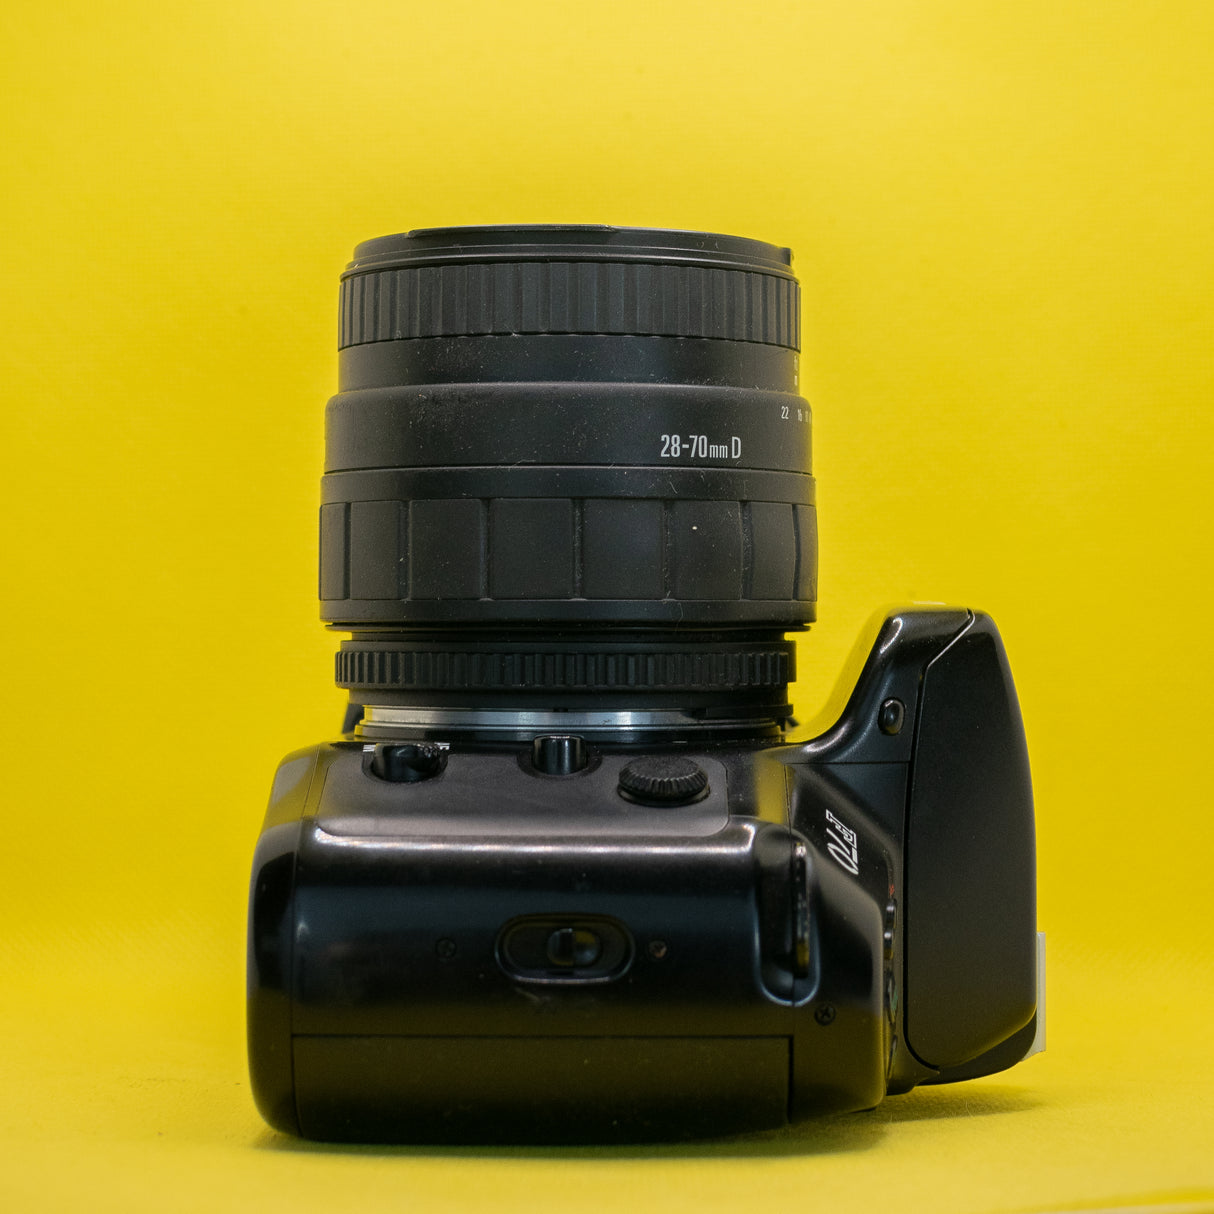 Nikon F70 - Fotocamera reflex 35 mm